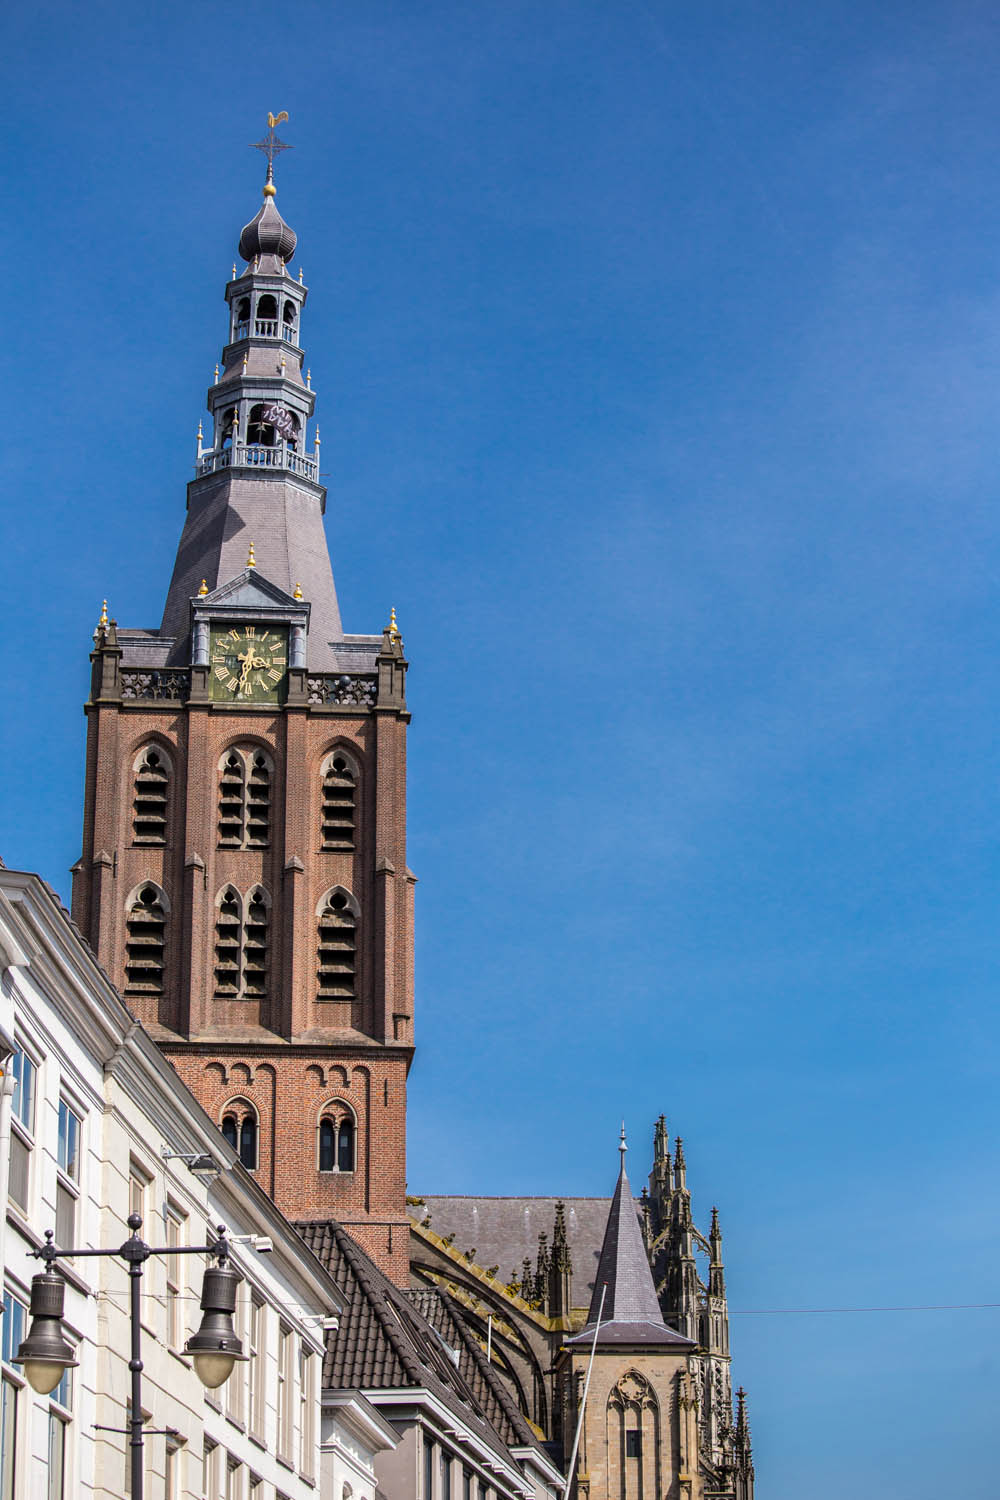 Toren van de Sint-Janskathedraal tegen een blauwe lucht